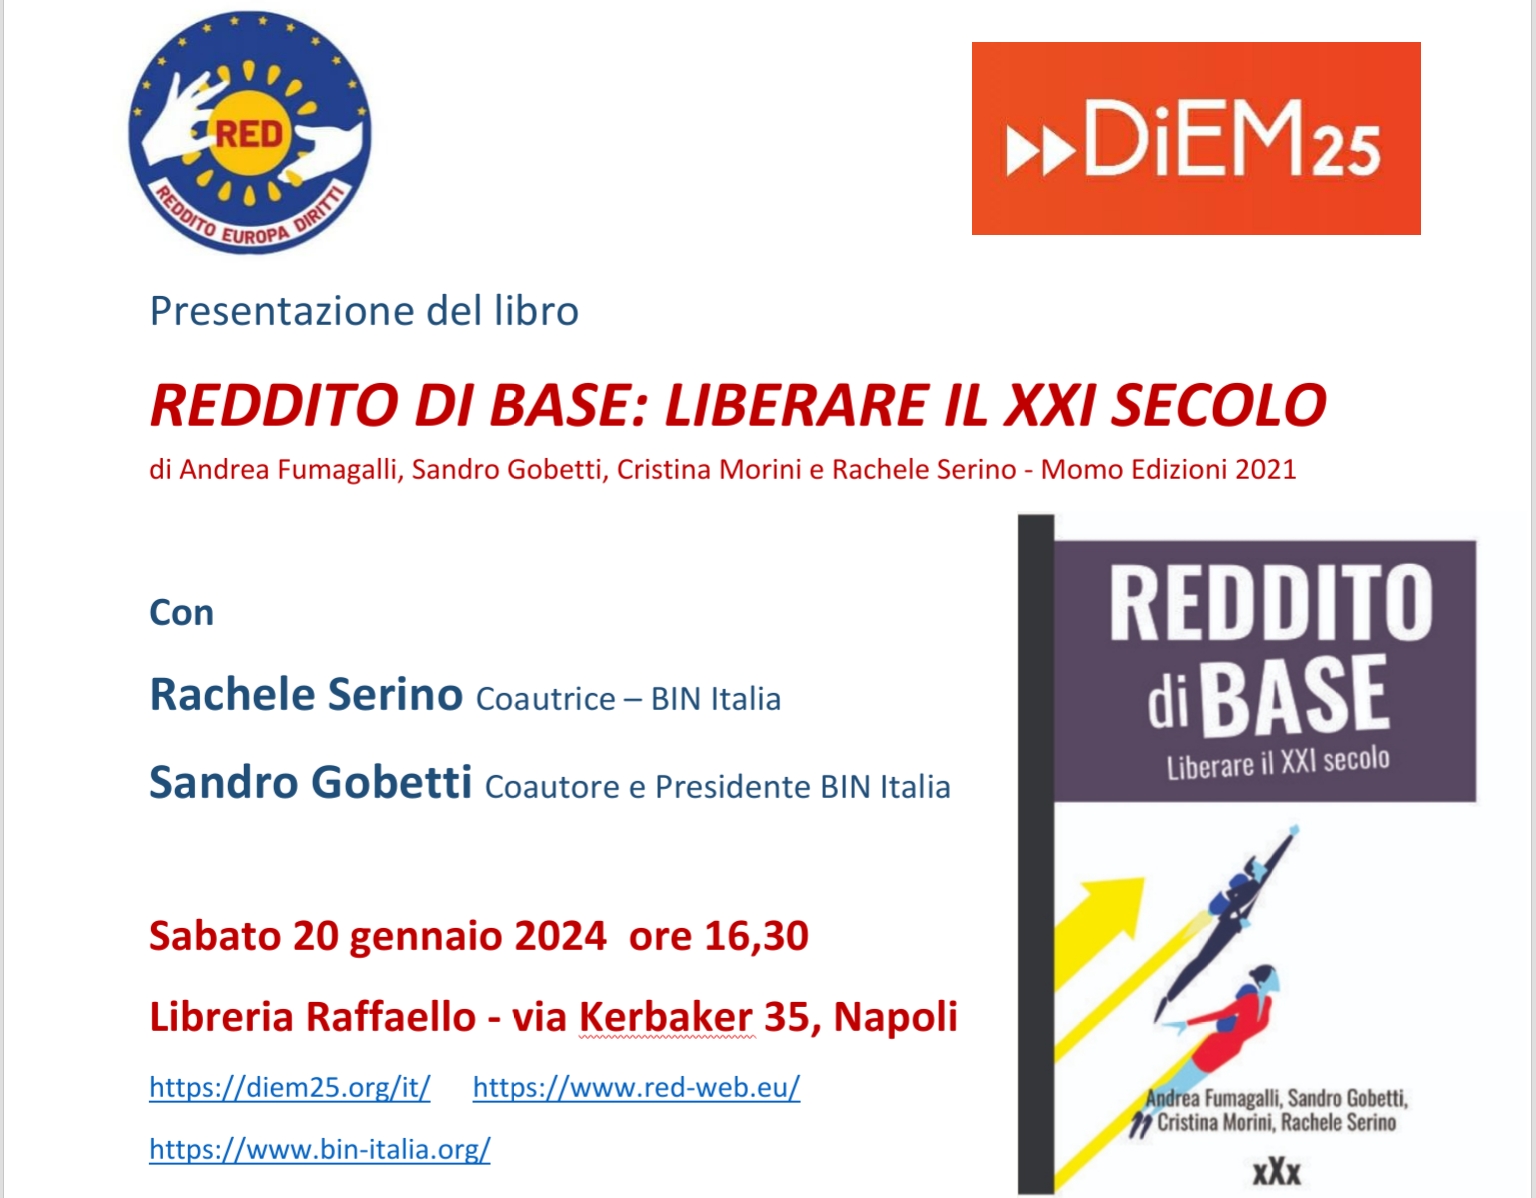 Evento RED – DiEM25 a Napoli 20 gennaio 2024